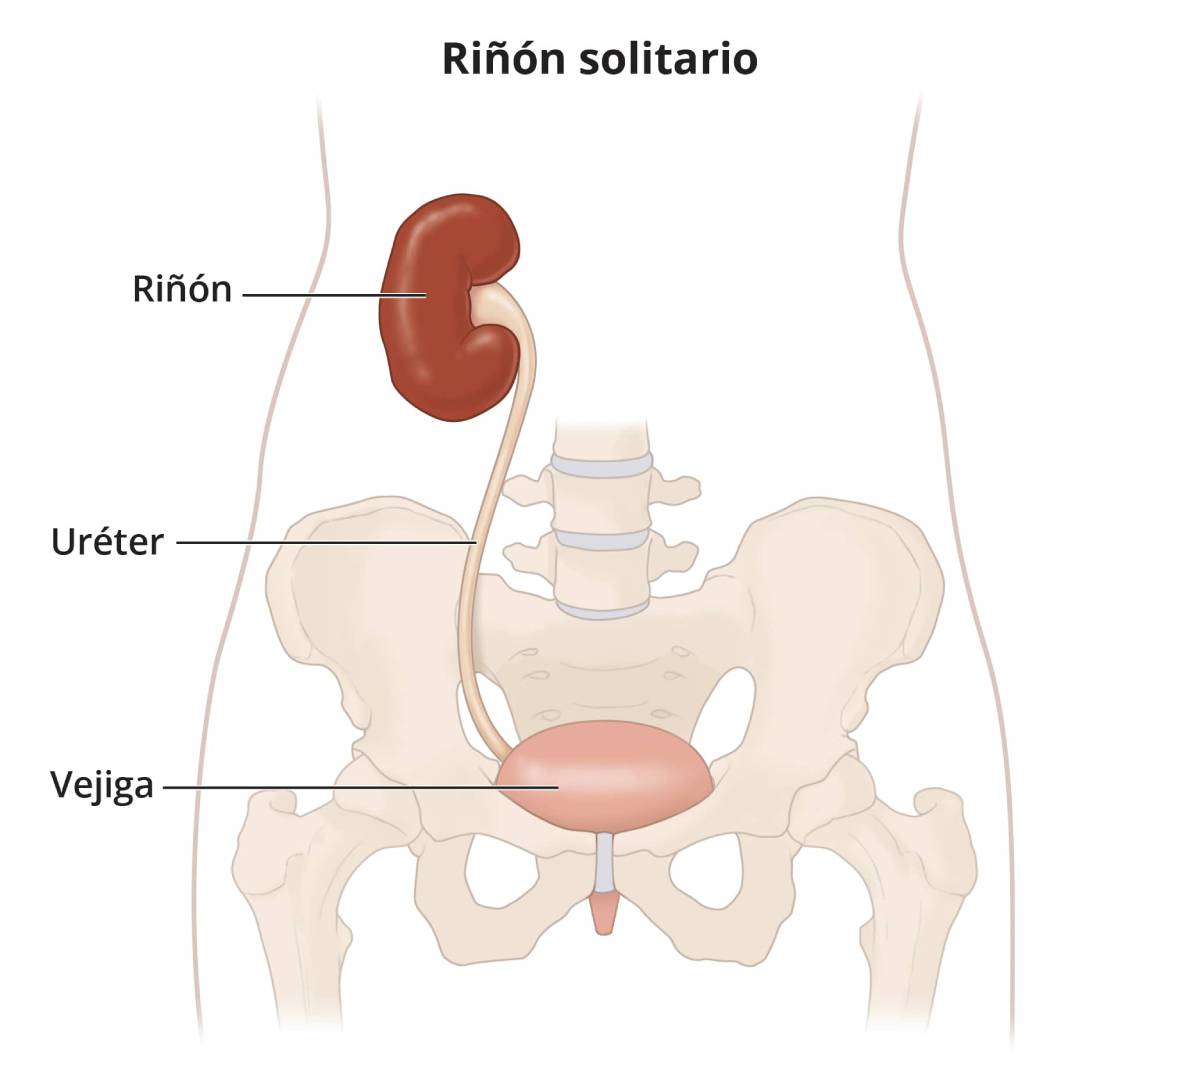 La ilustración muestra un solo riñón, uréter y vejiga.